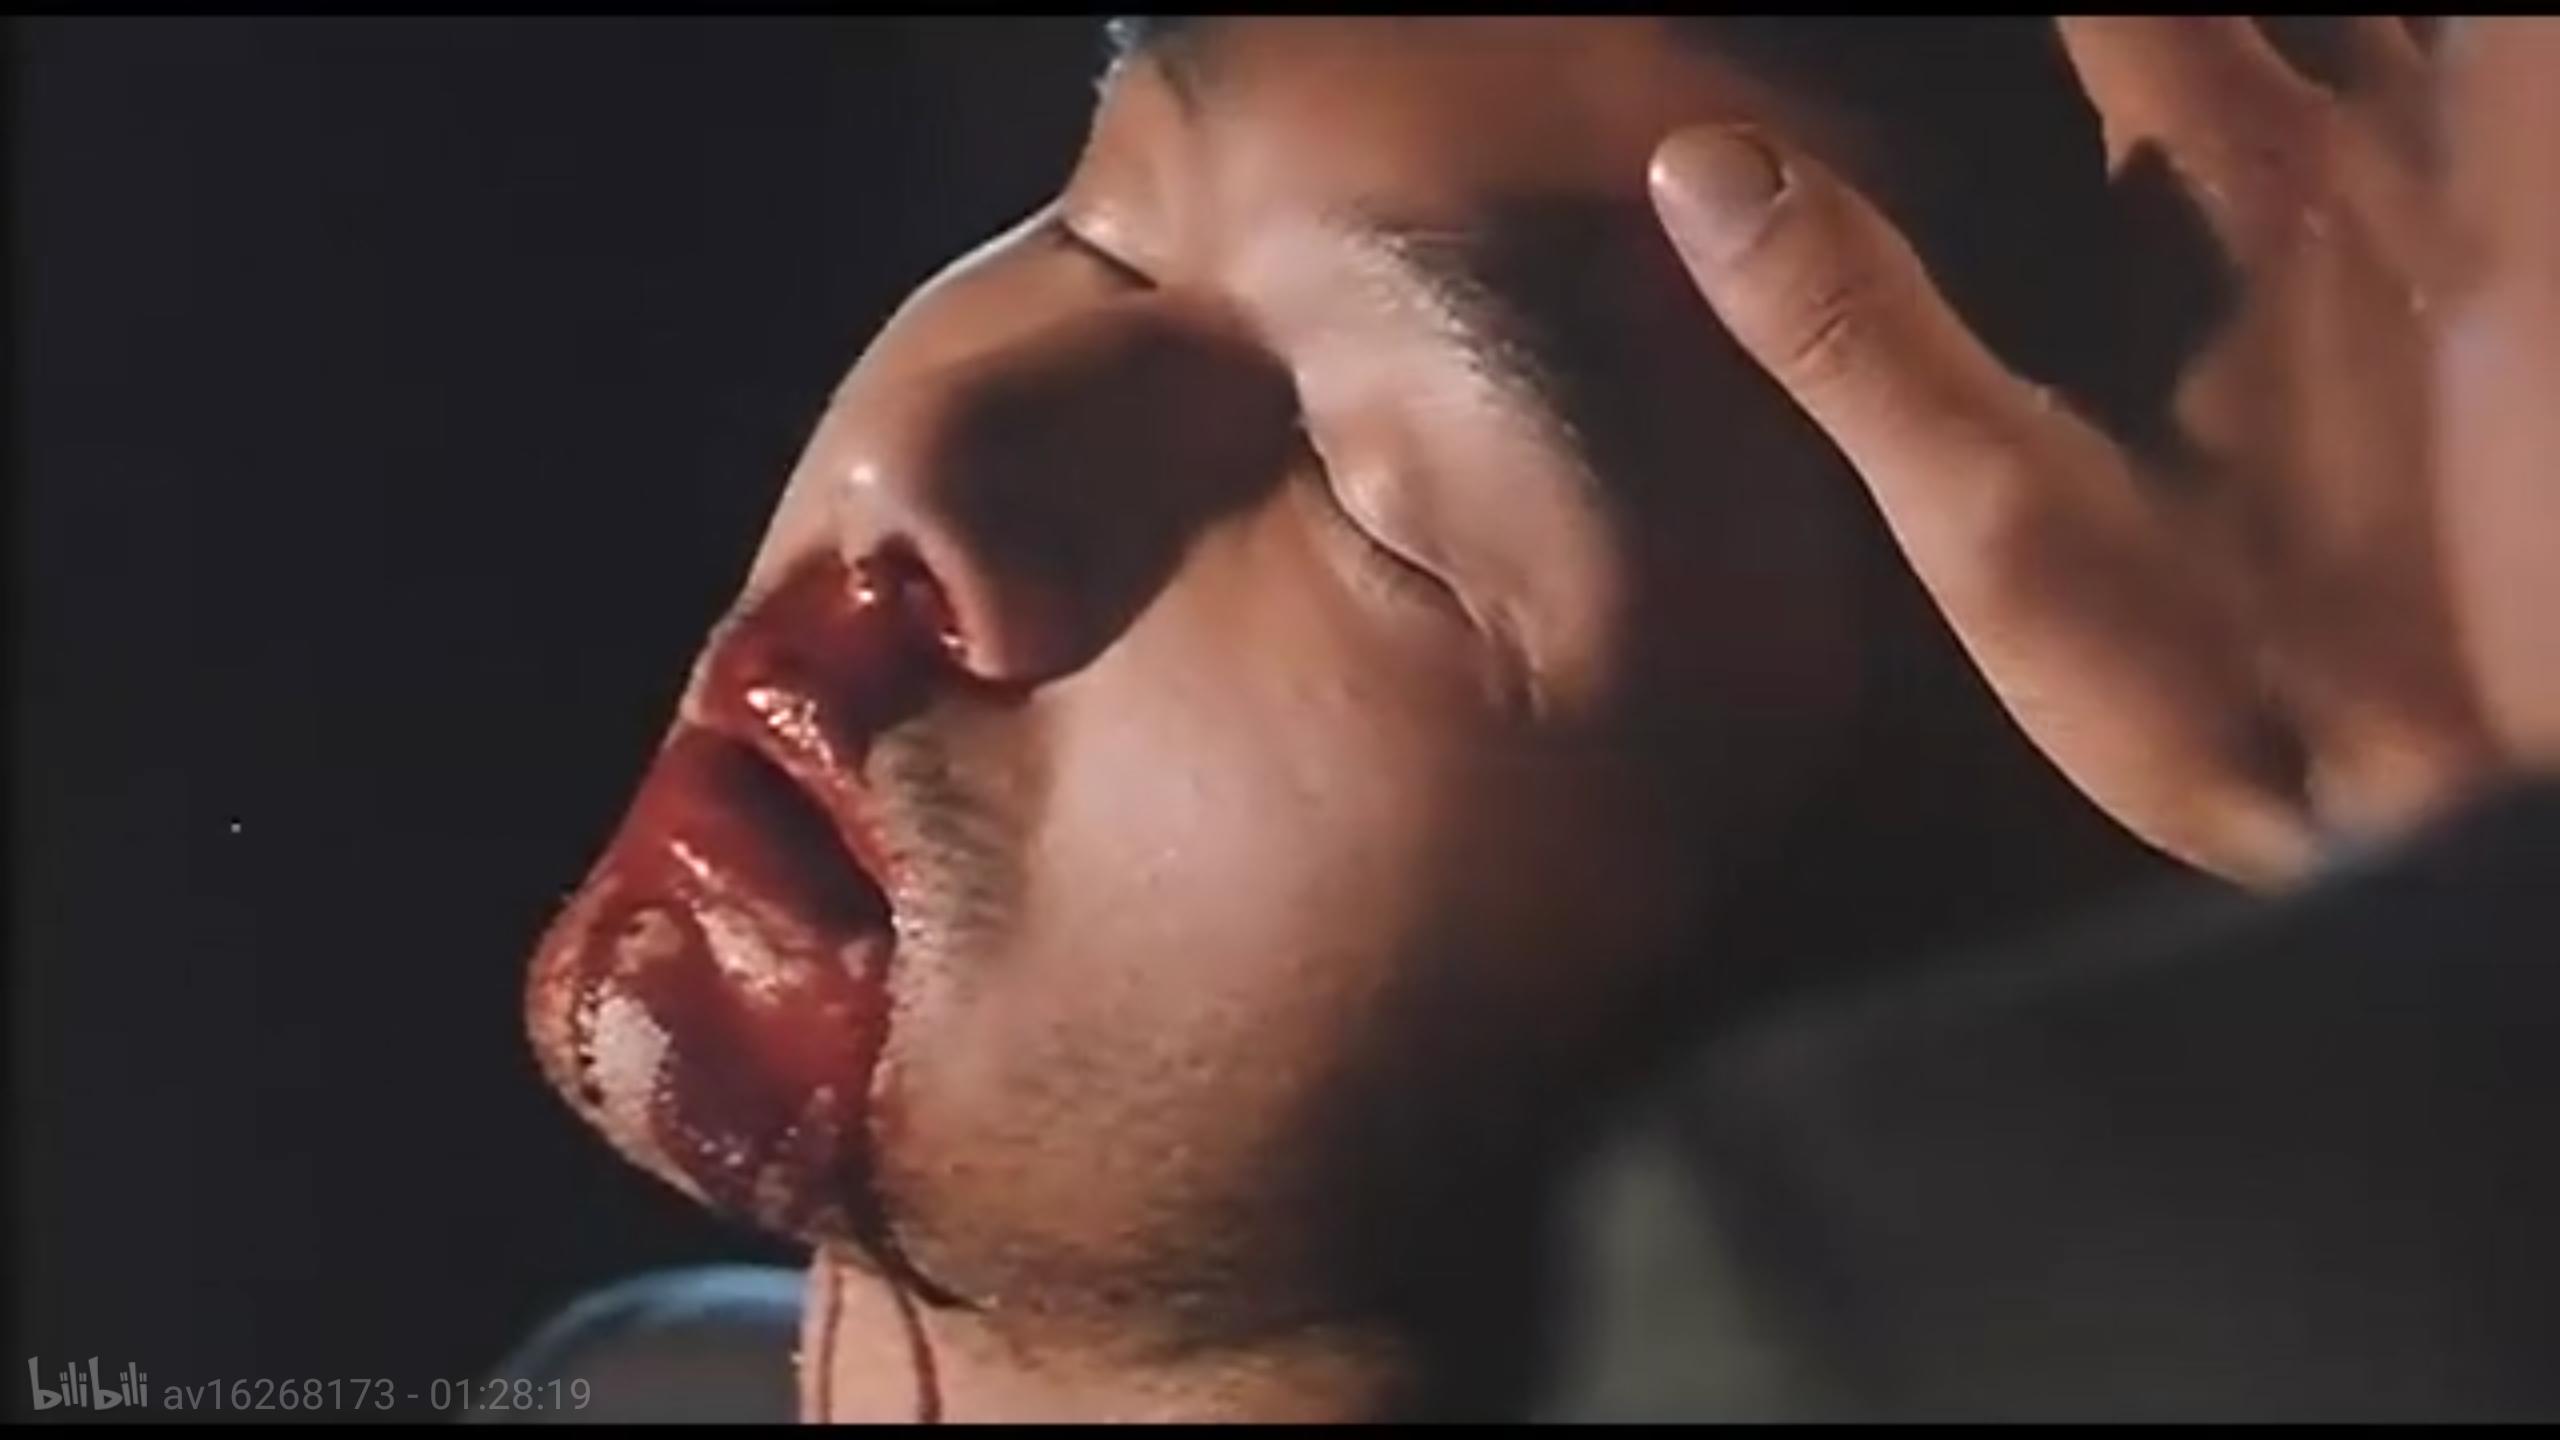 Ho kong fung wan (1998) Screenshot 5 